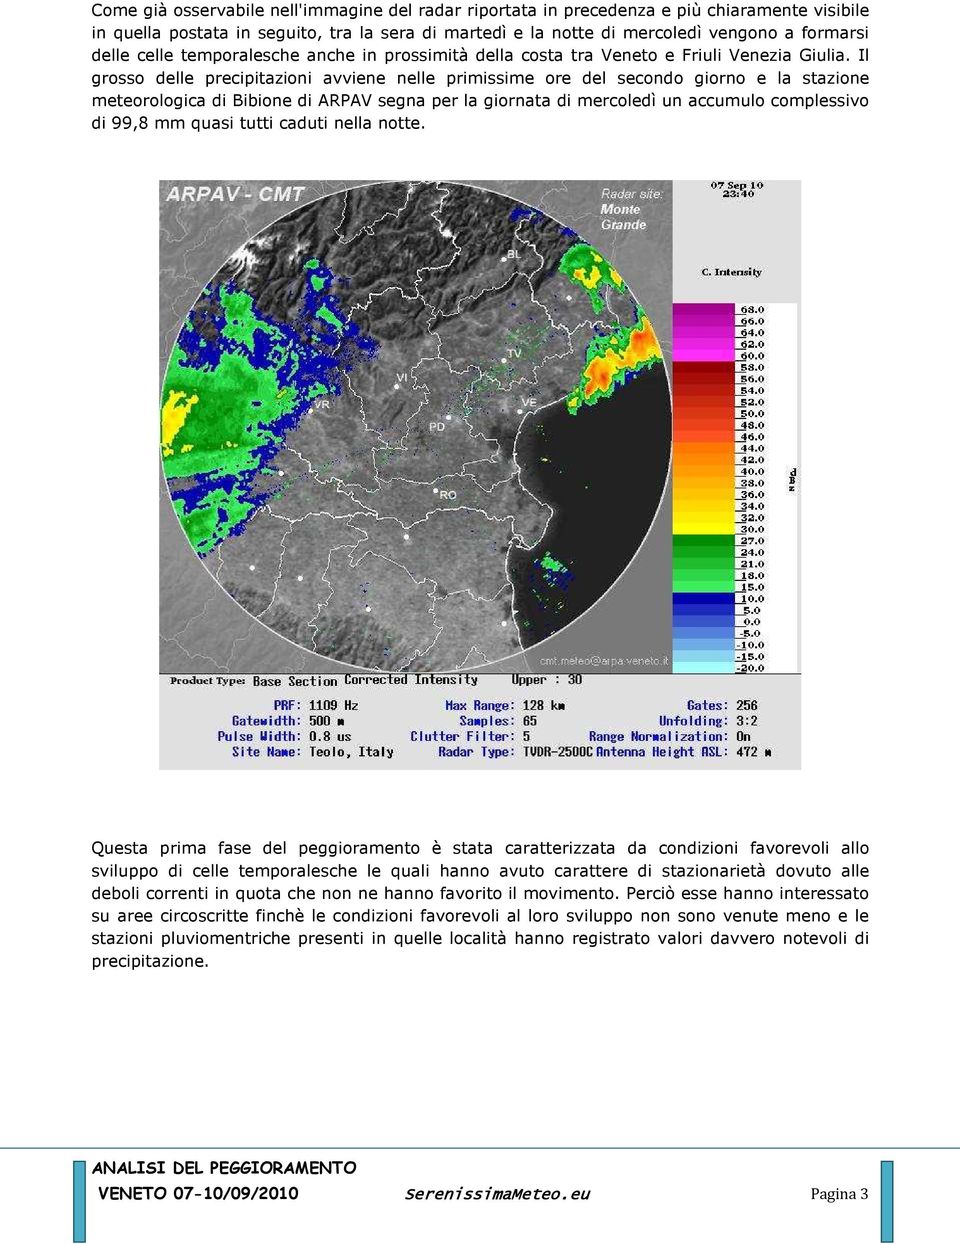 Il grosso delle precipitazioni avviene nelle primissime ore del secondo giorno e la stazione meteorologica di Bibione di ARPAV segna per la giornata di mercoledì un accumulo complessivo di 99,8 mm